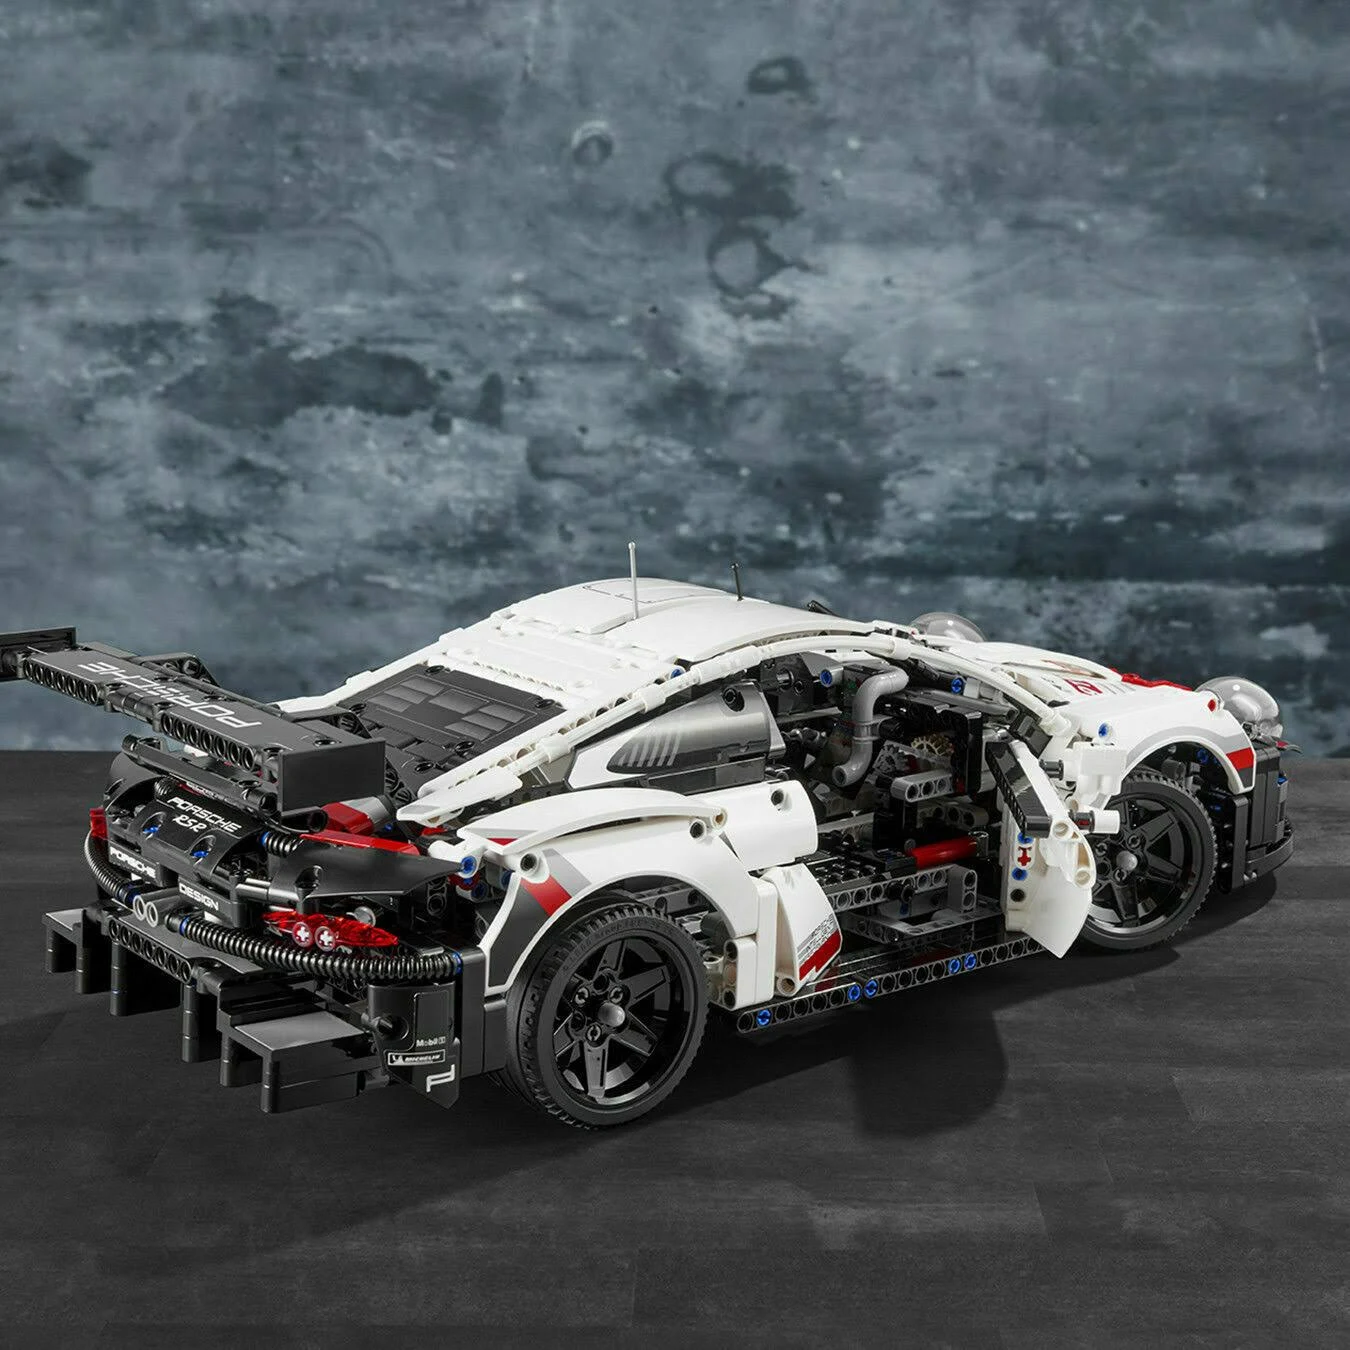 Lego Technic Porsche 911 RSR 42096 Race Car Building Set Stem (1,580